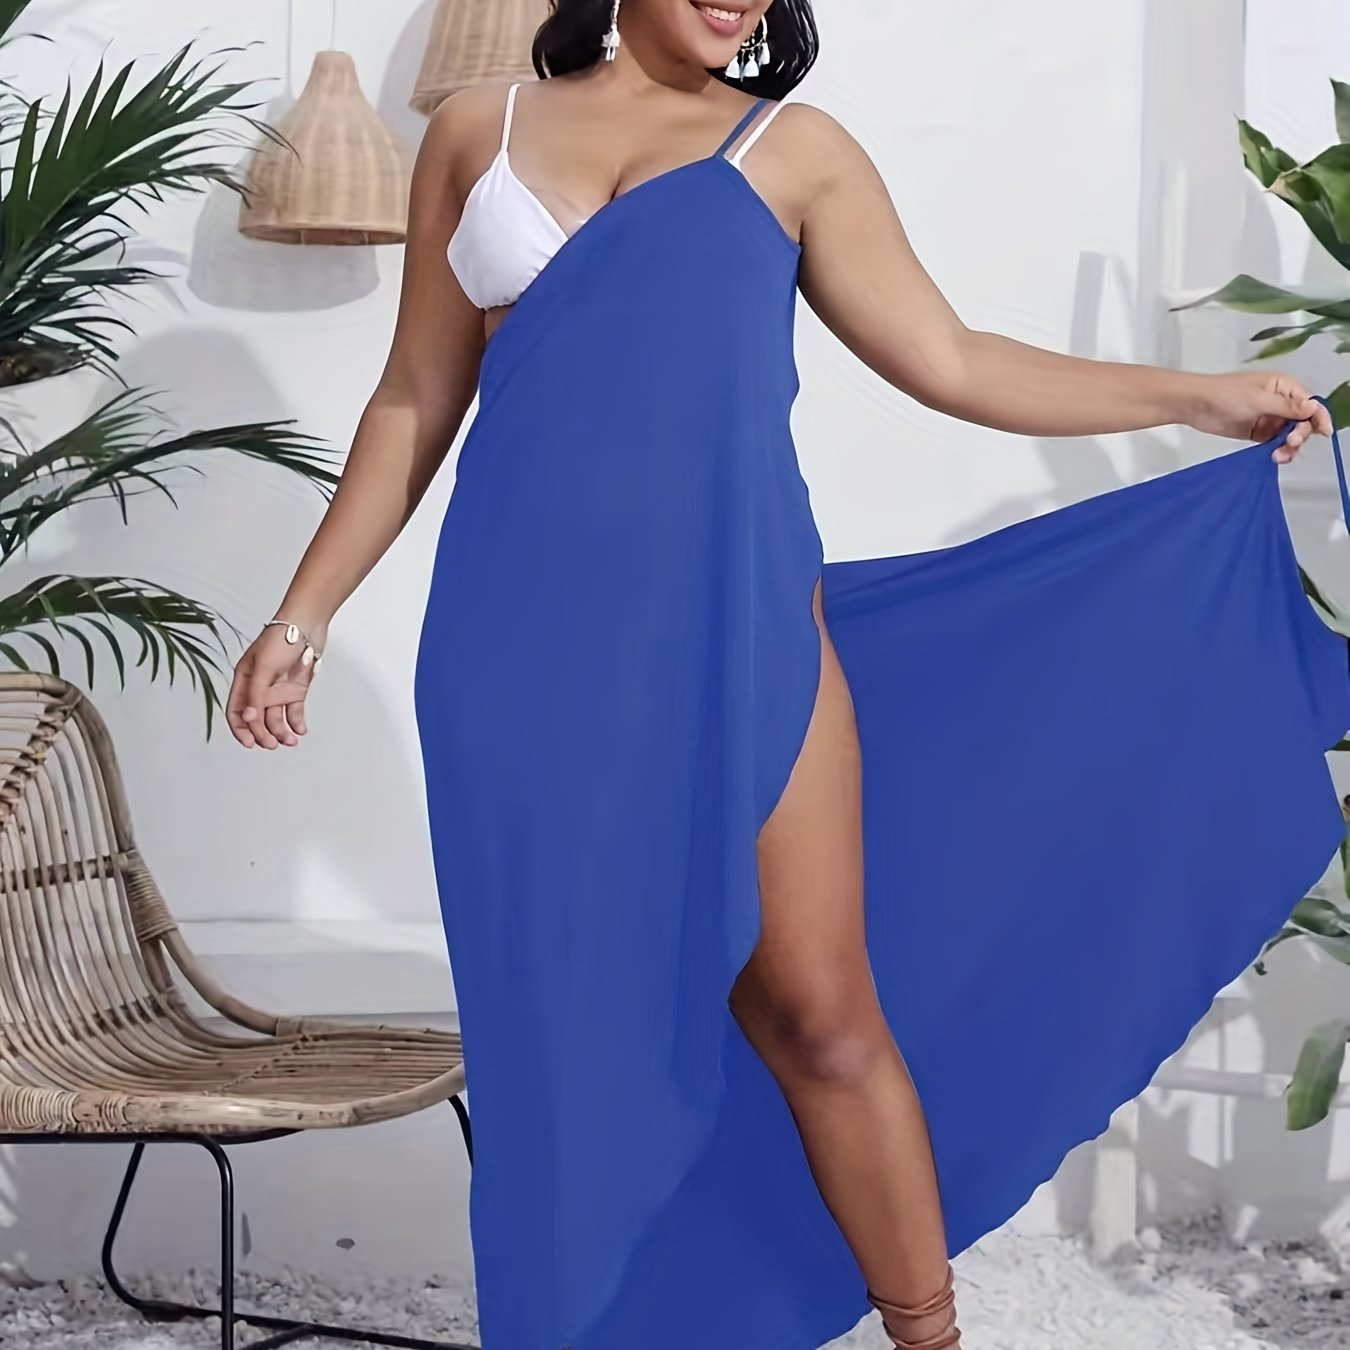 Antmvs Plus Size Sexy Wrap Dress, Women's Plus High Split Solid Medium Stretch Cami Maxi Dress